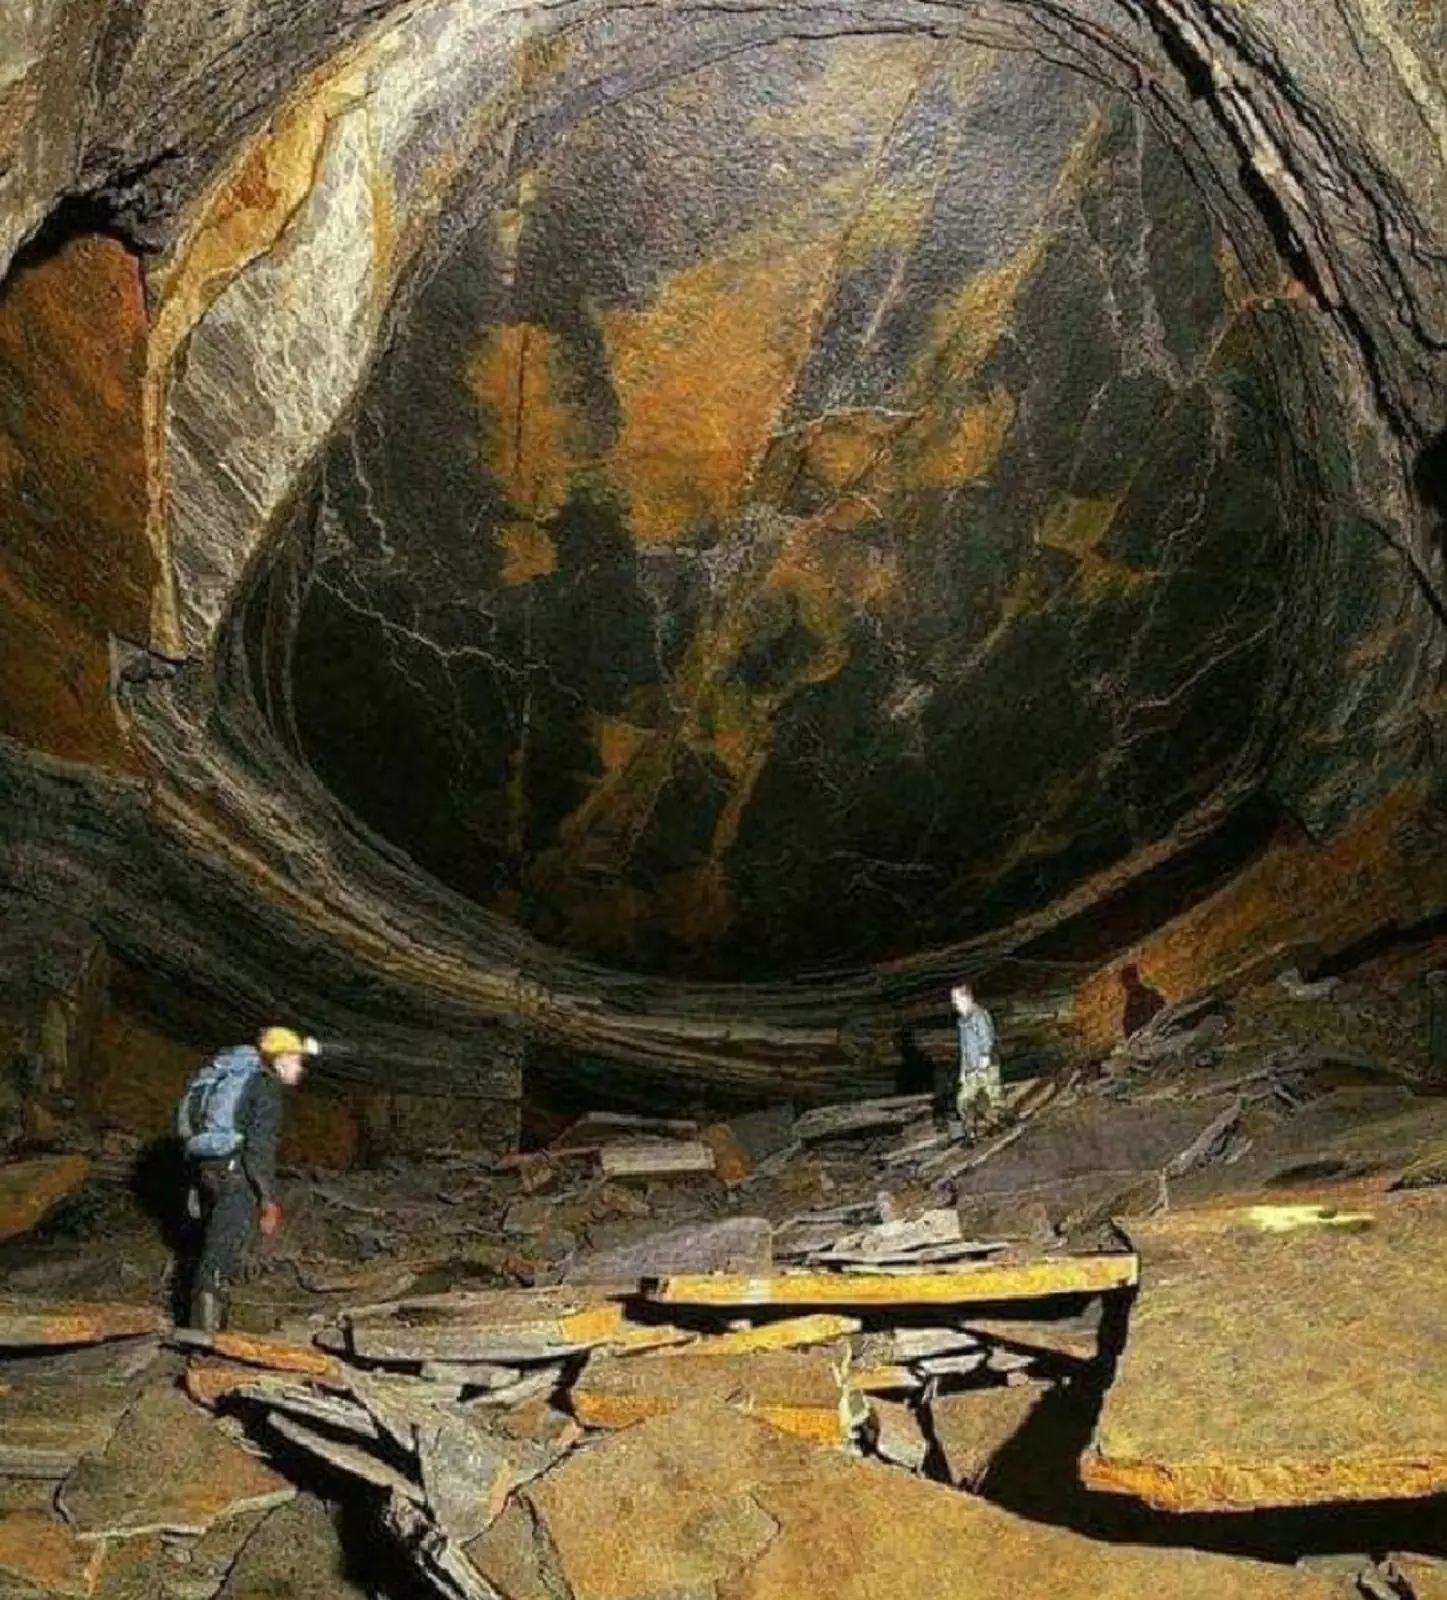 Stone mining. Каменный рудник глаз дракона в Ланкашире , Великобритании. Глаз дракона Ланкаширская шахта. Каменный рудник глаз дракона в Великобритании. Глаз дракона в угольной шахте Ланкашир.